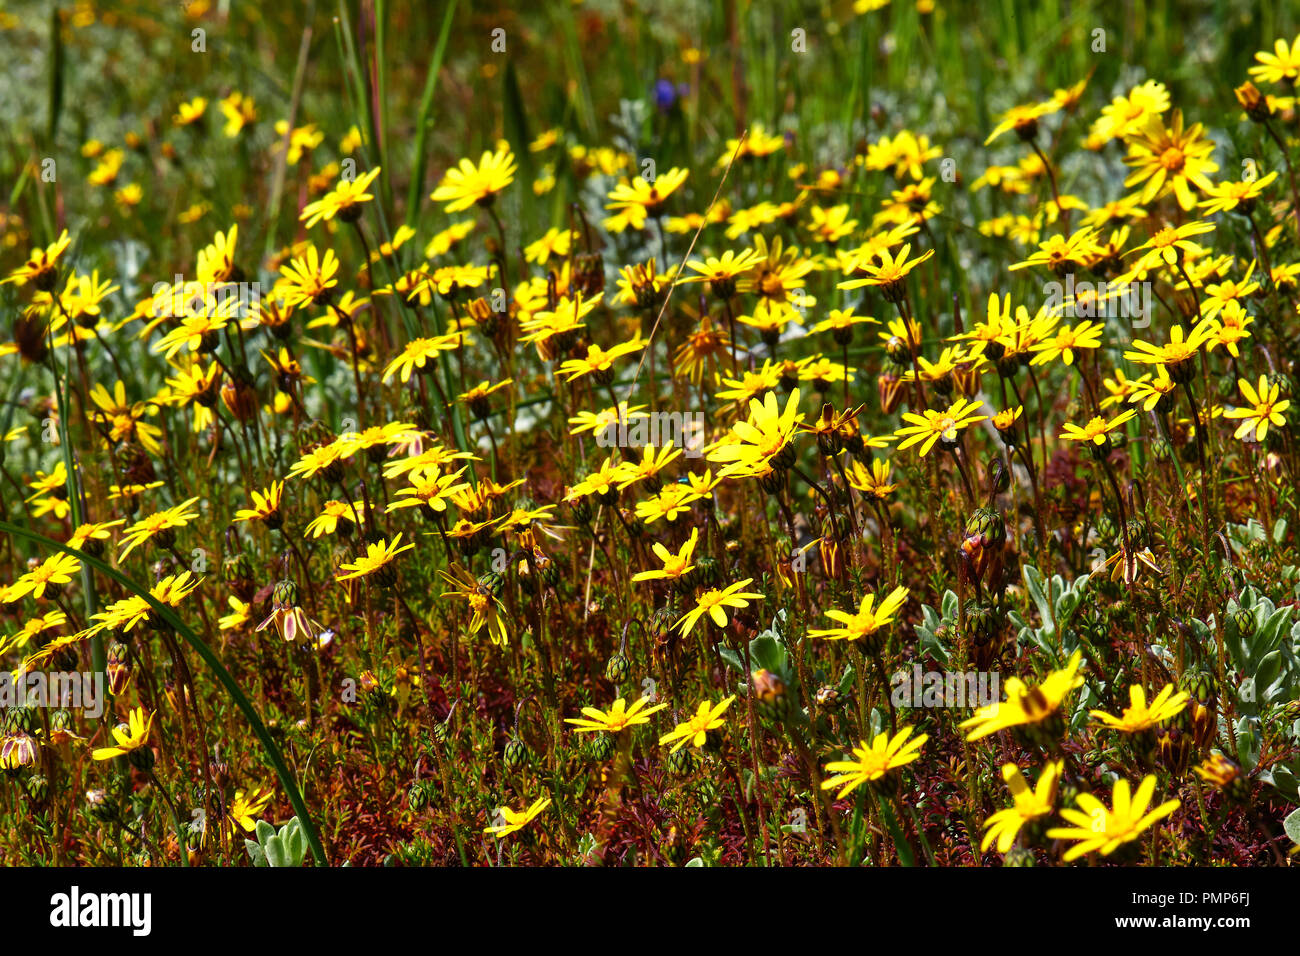 Yellow Daisies (Ursinia dentata) Stock Photo